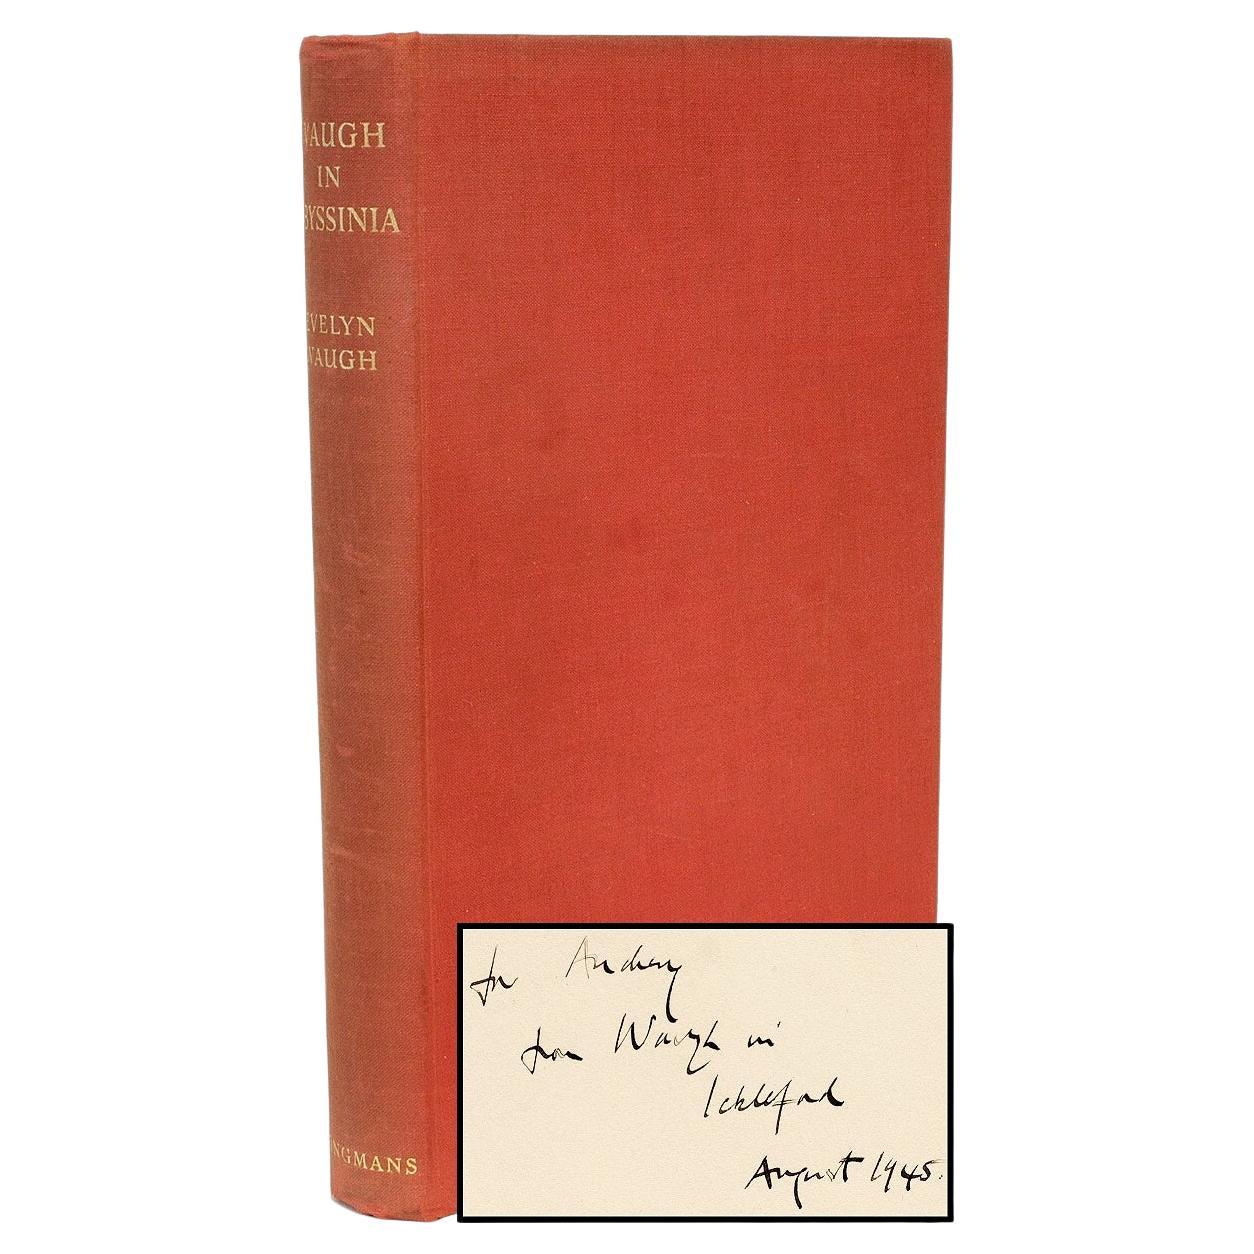 Waugh, Evelyn, Waugh in Abyssinia, Erstausgabe, Präsentationskopie, 1936